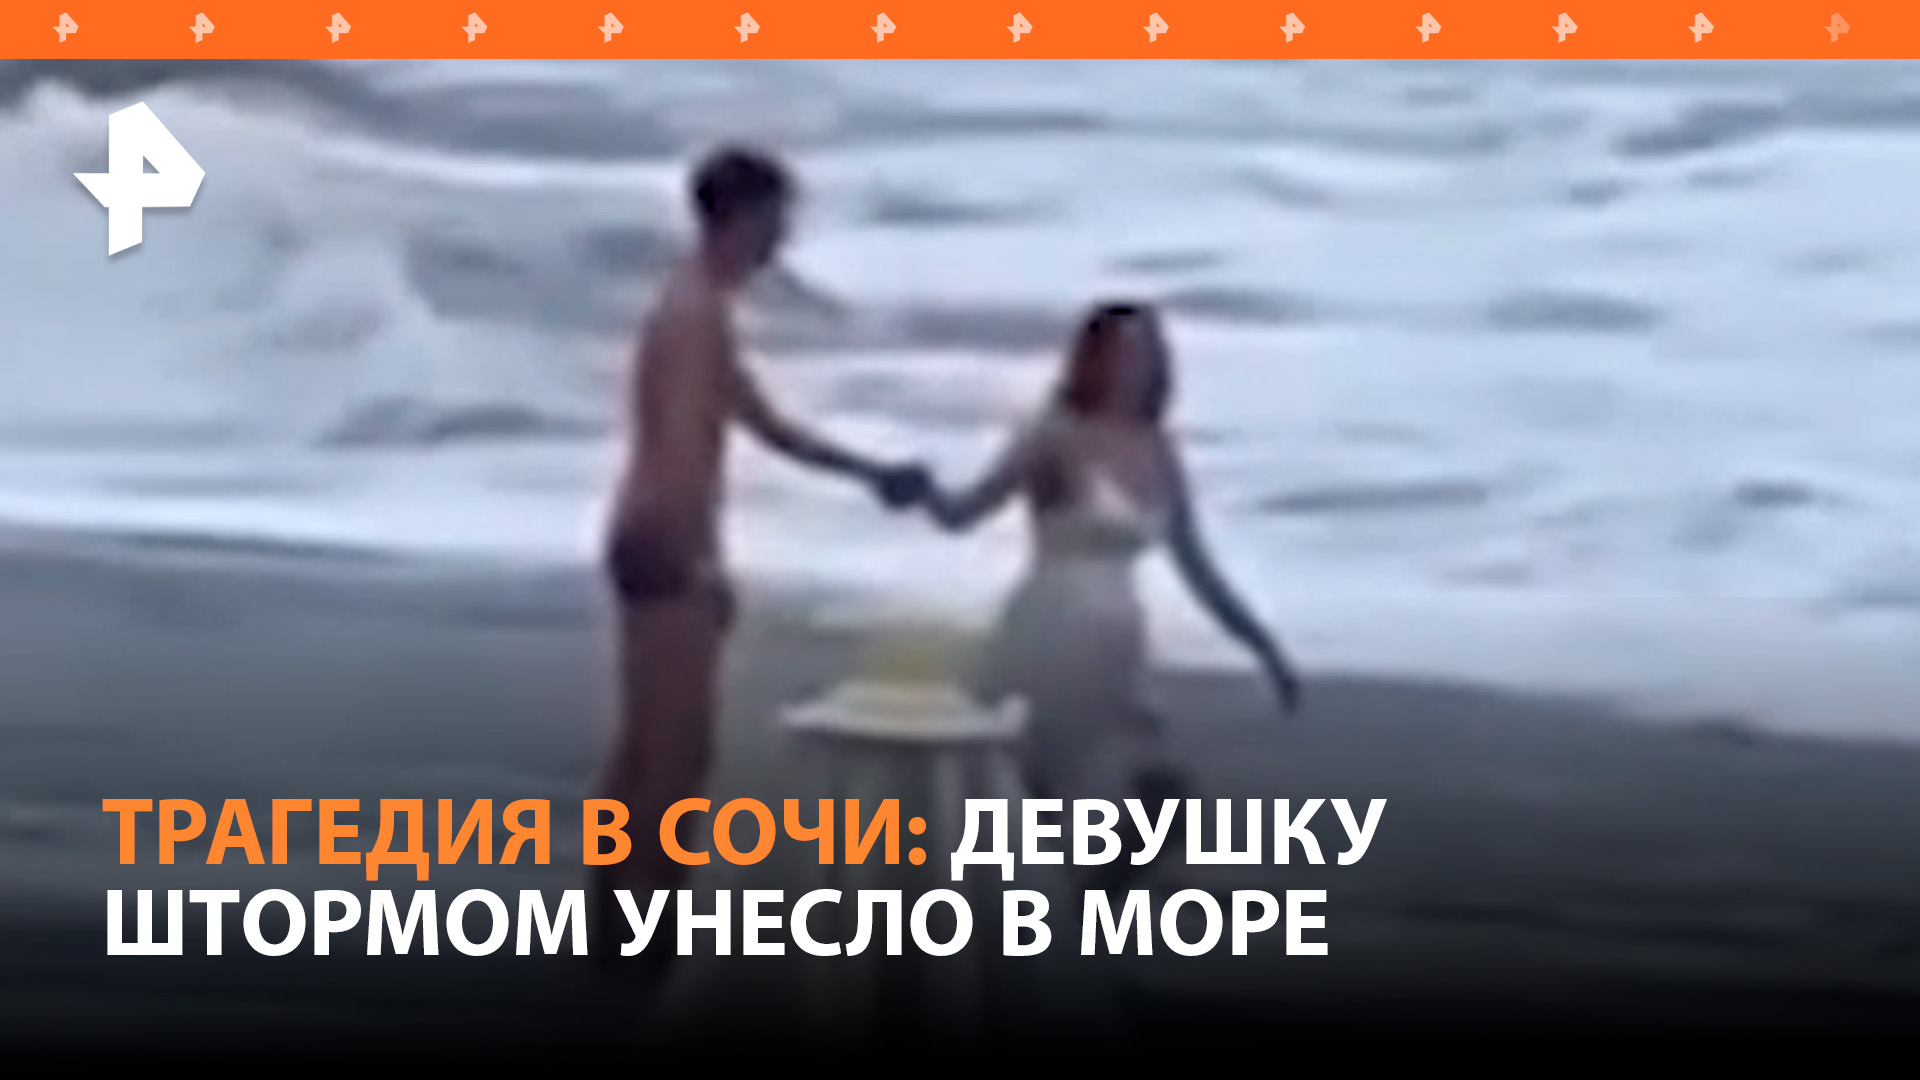 Жуткая драма: 20-летнюю девушку унесло в море во время романтической прогулки по пляжу в Сочи / РЕН